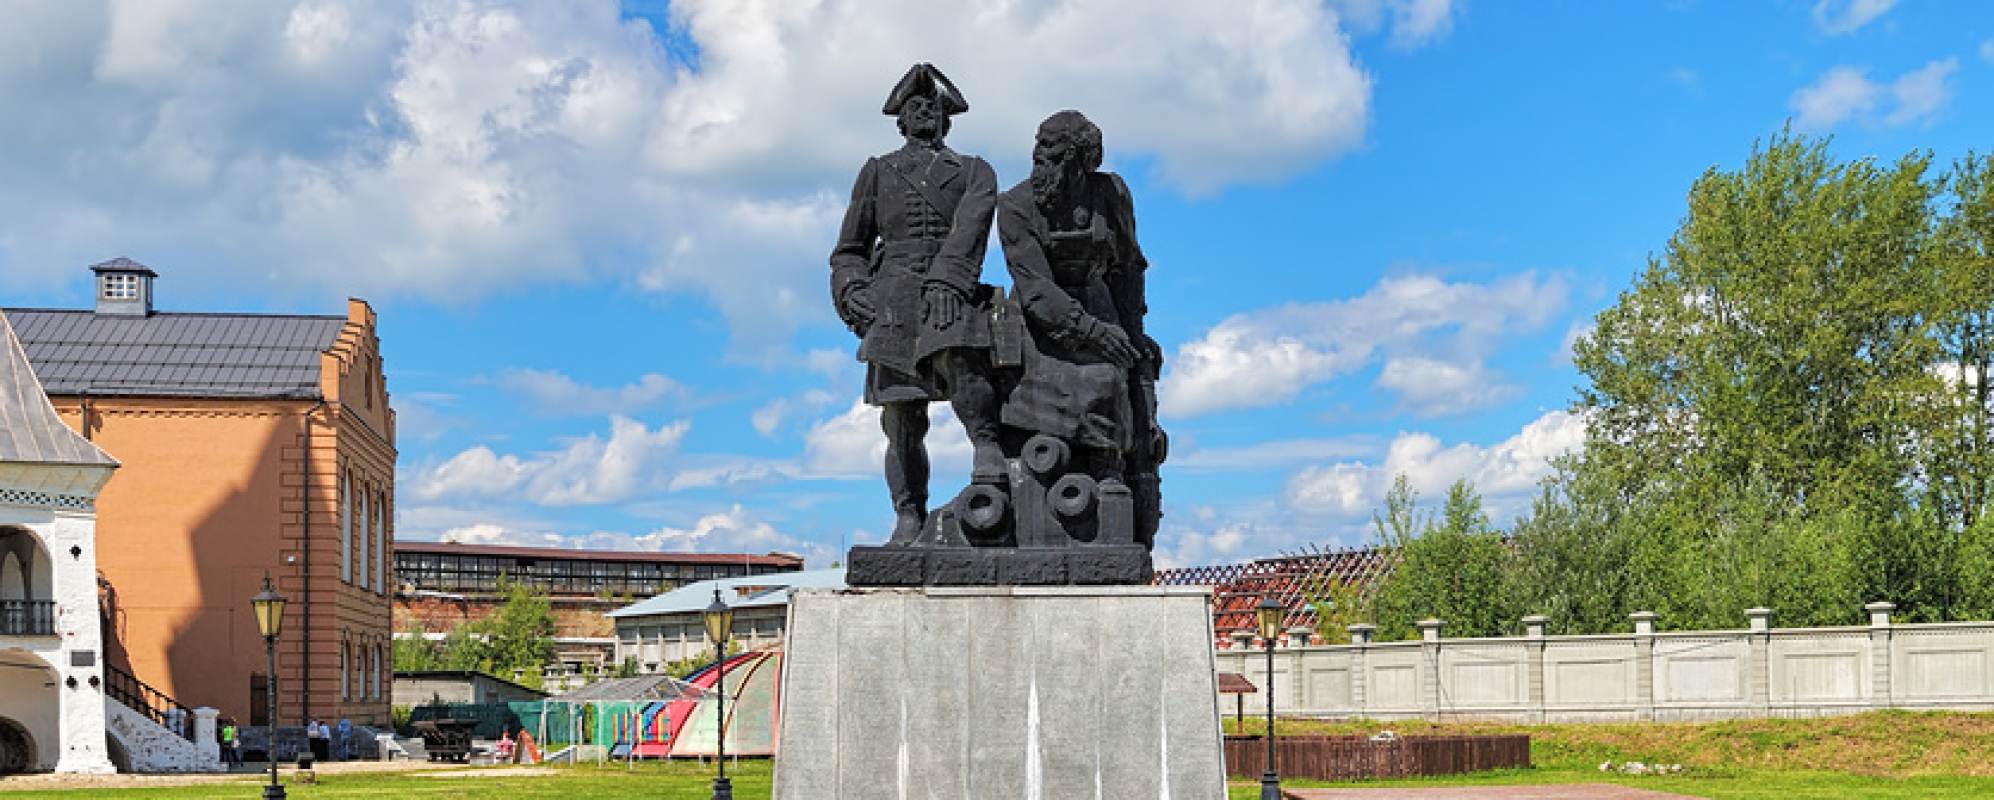 Фотографии памятника Памятник Петру I и Демидову